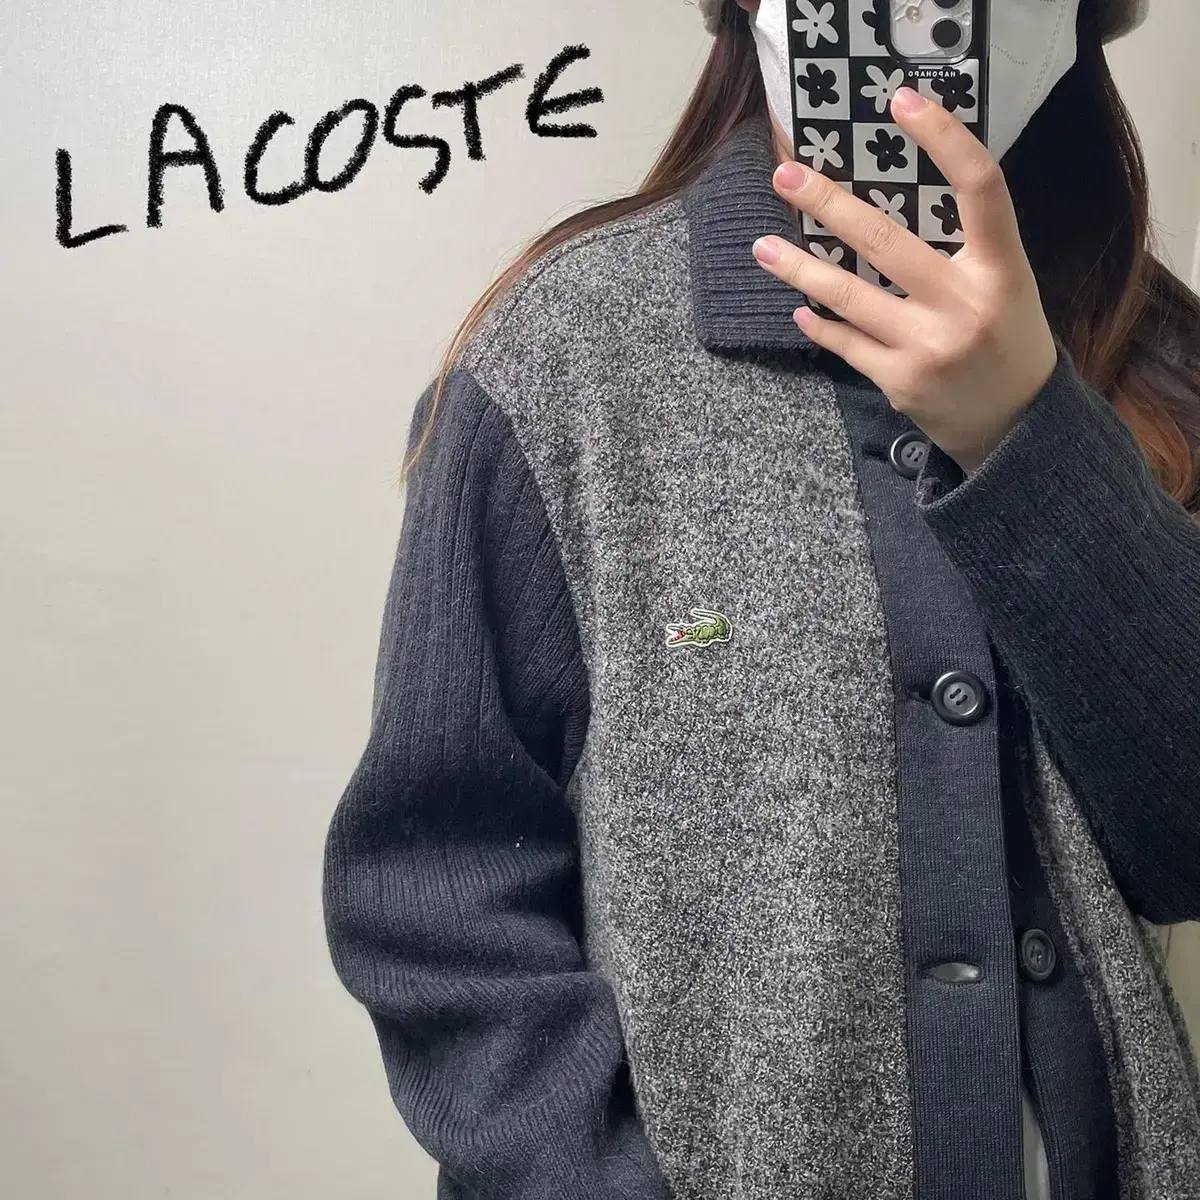 라코스테 / 라코스테 가디건 / 라코스테 스웨터 / 빈티지샵 | 브랜드 중고거래 플랫폼, 번개장터